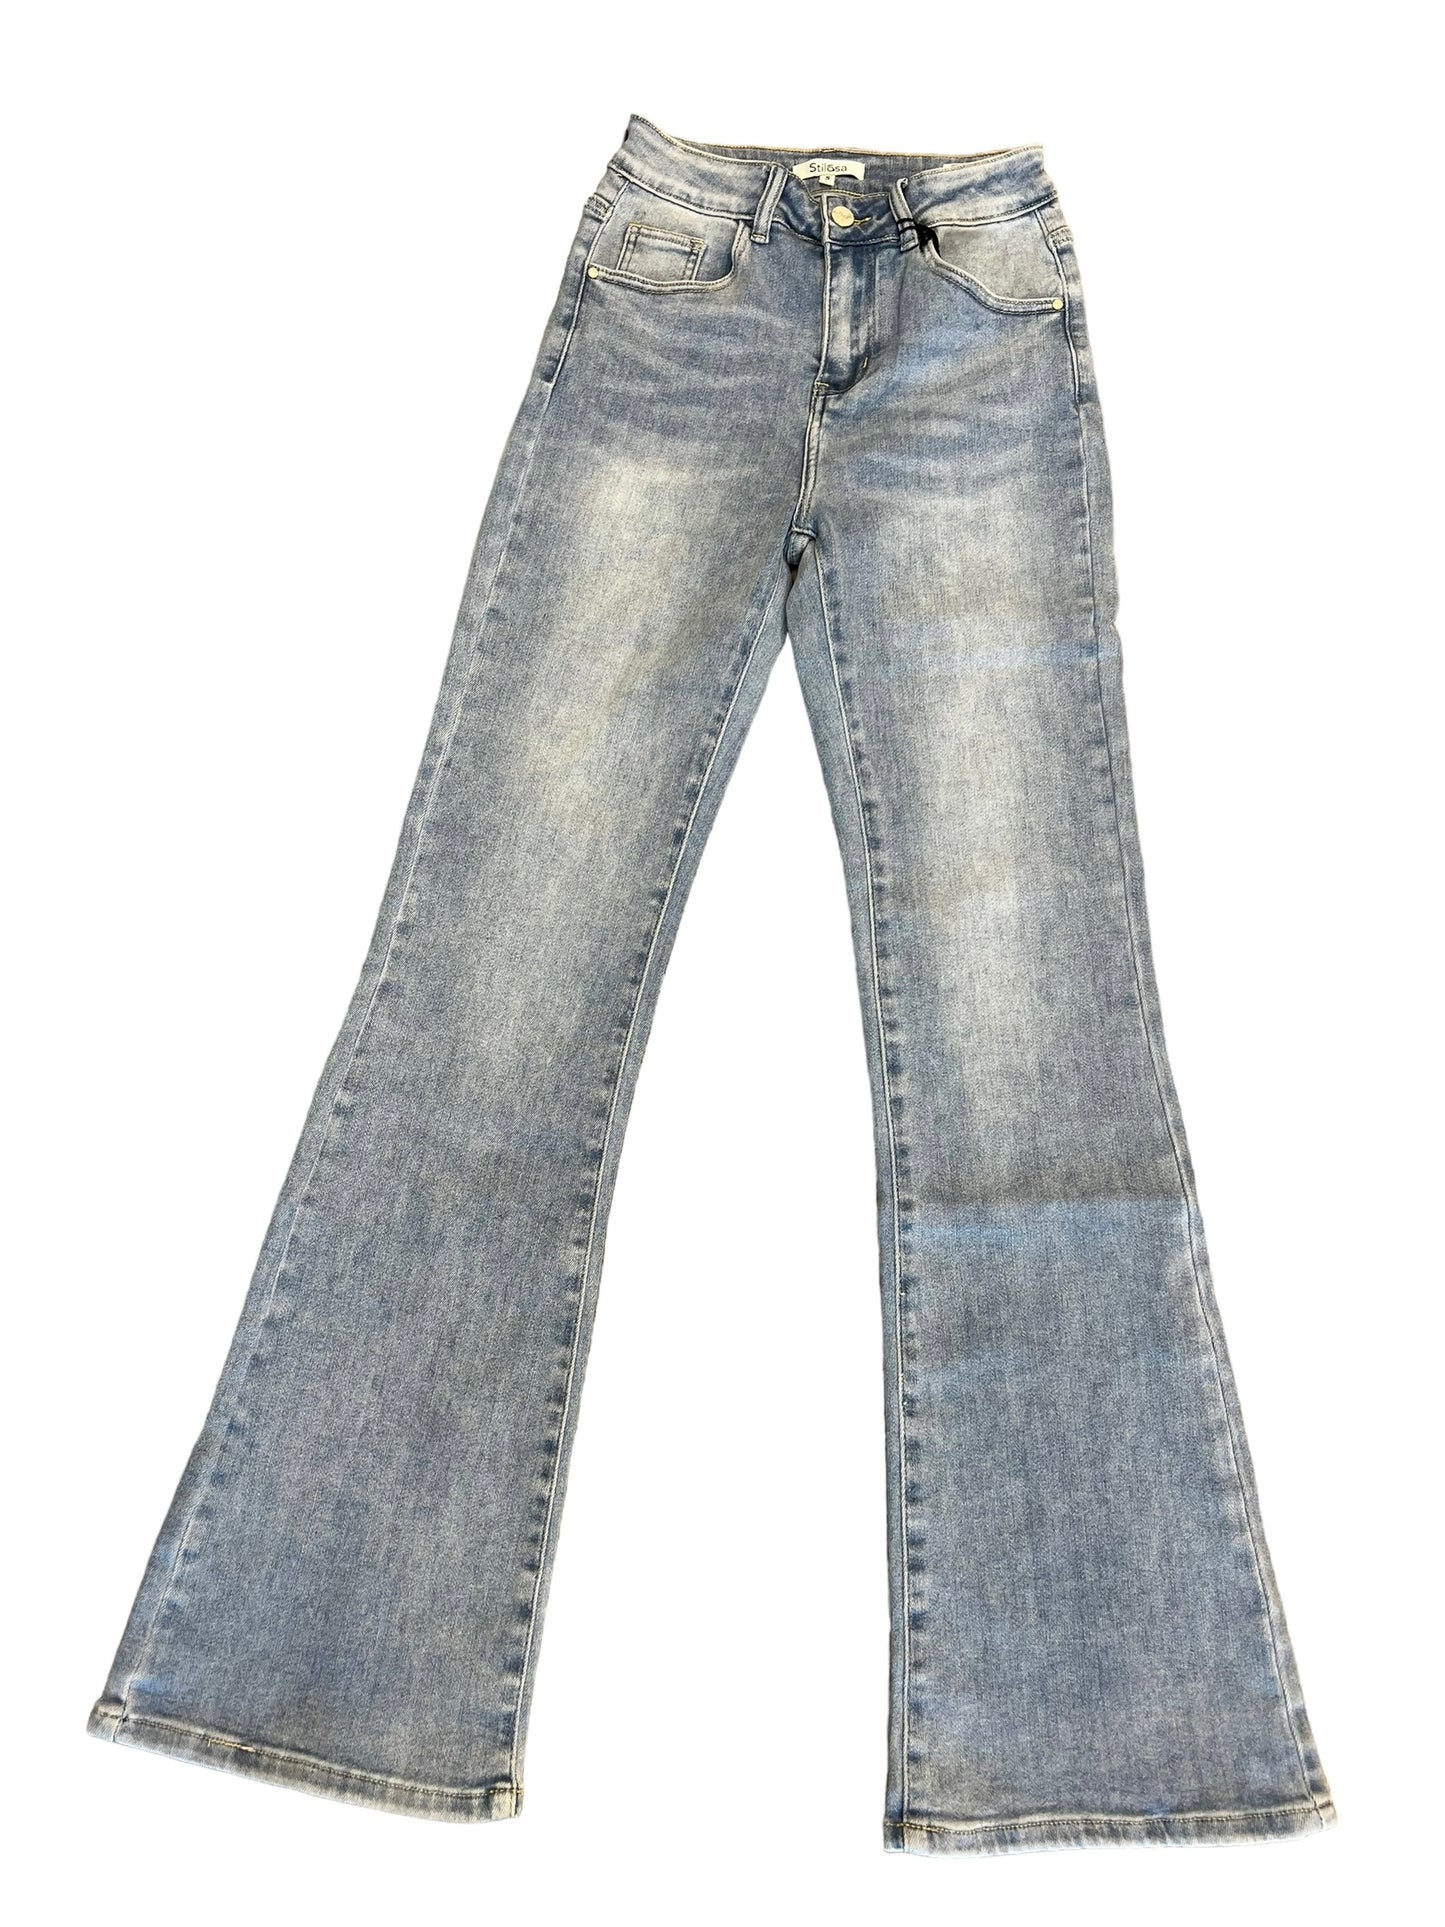 Jeans chiaro zampa - abbigliamento - Stilosa